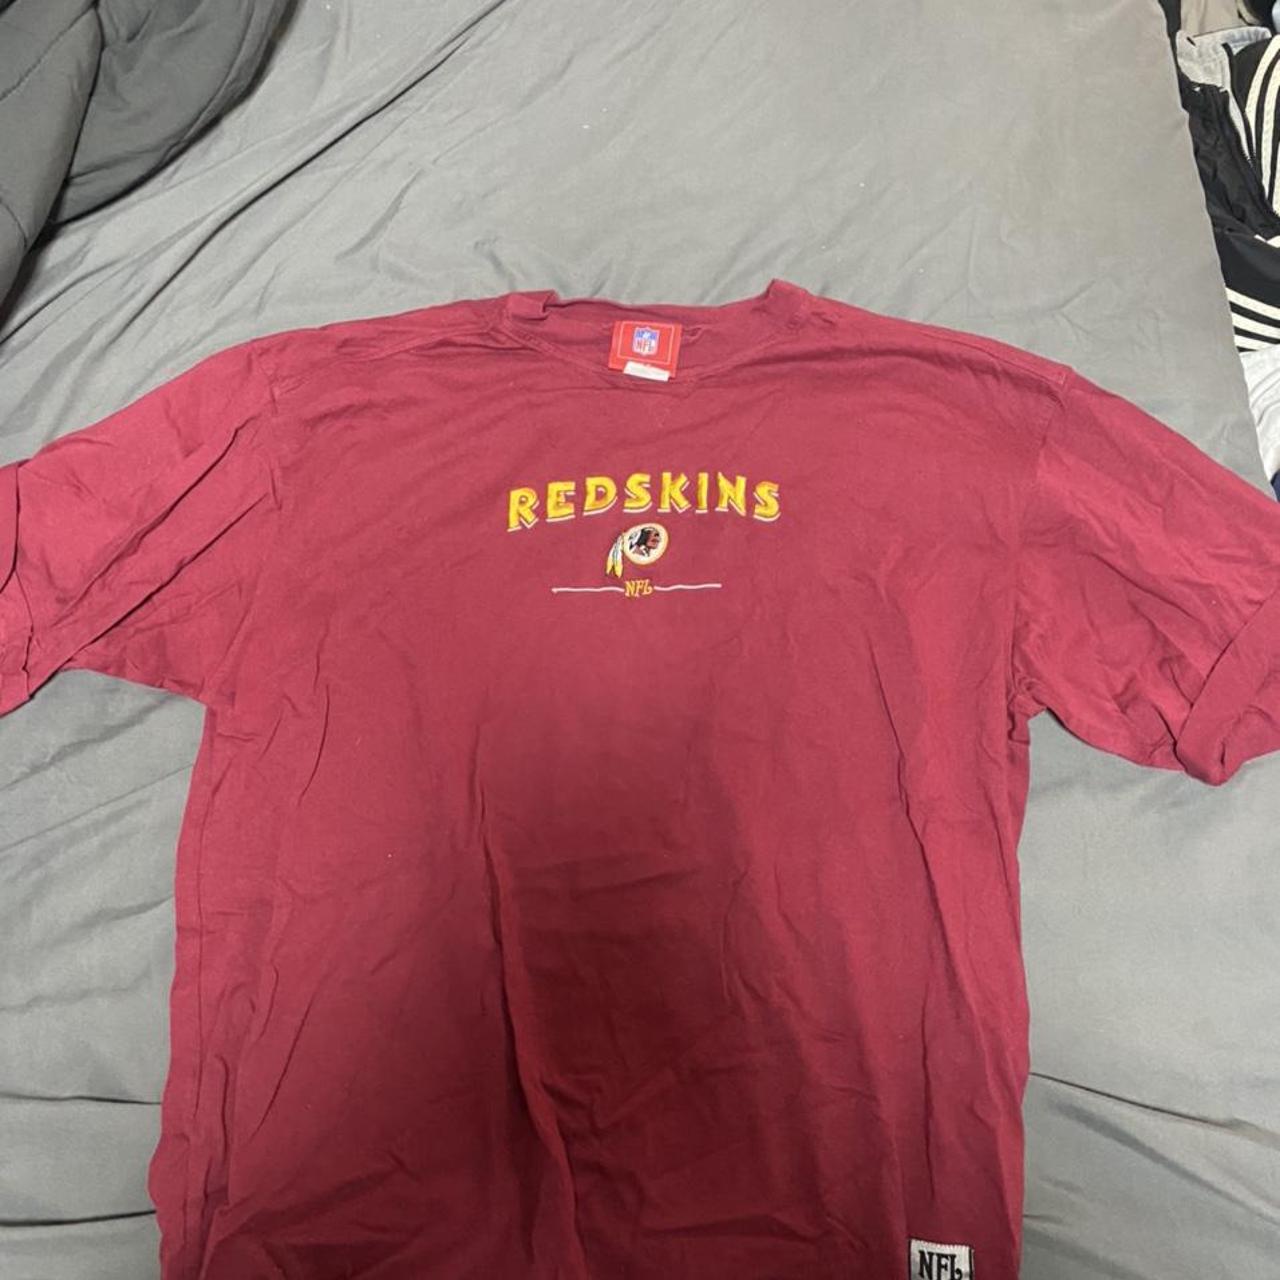 Vintage NFL apparel Washington Redskins shirt. Has a... - Depop